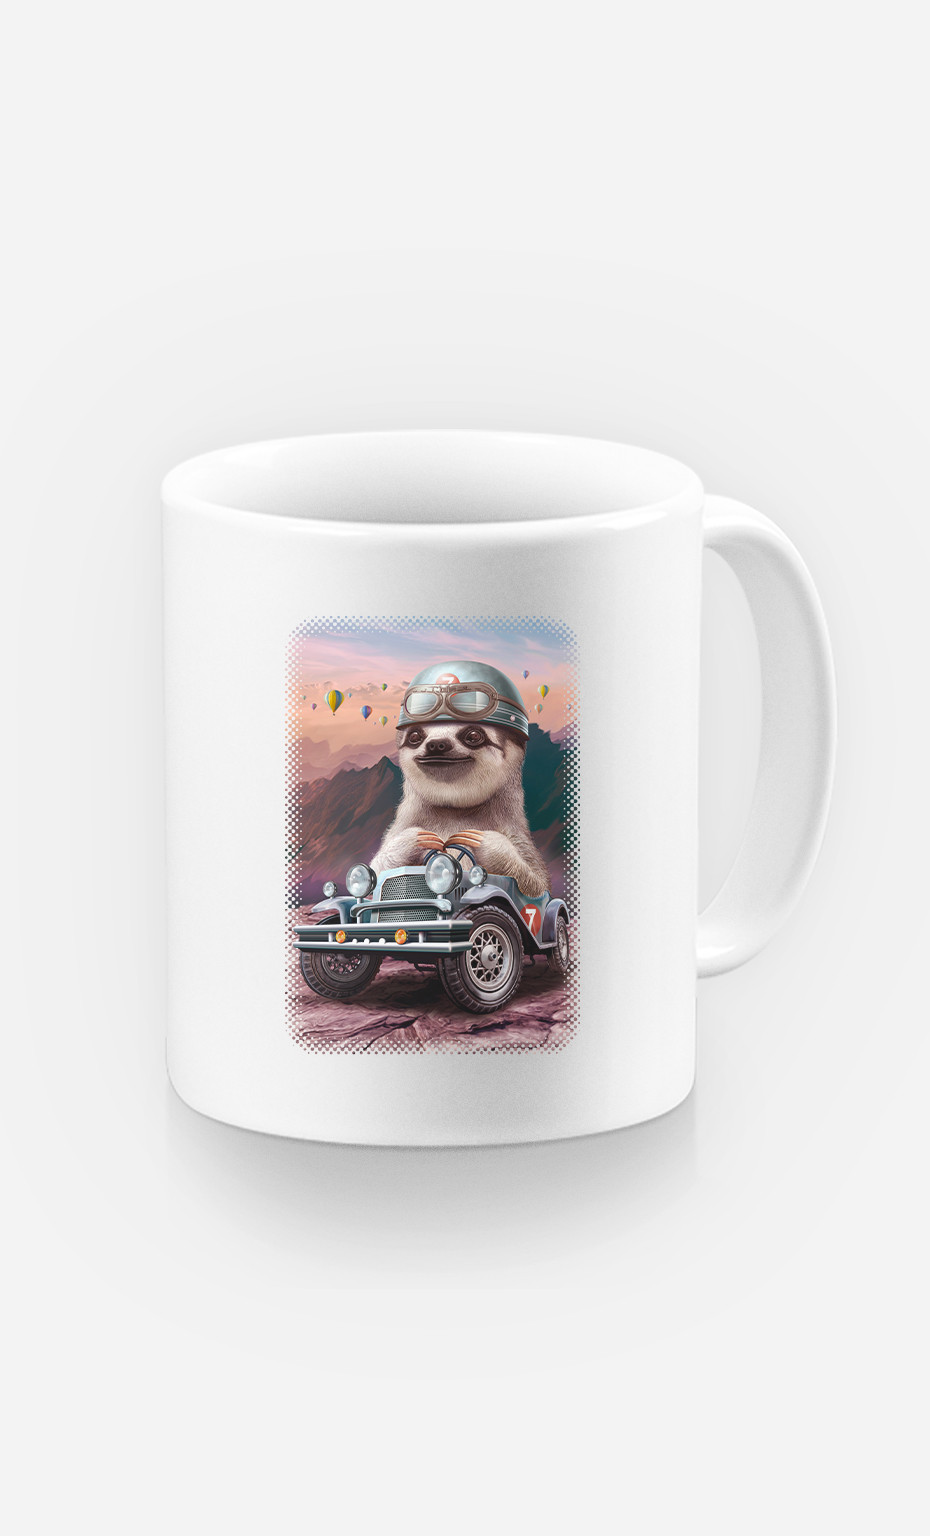 Mug Sloth On Racing Car